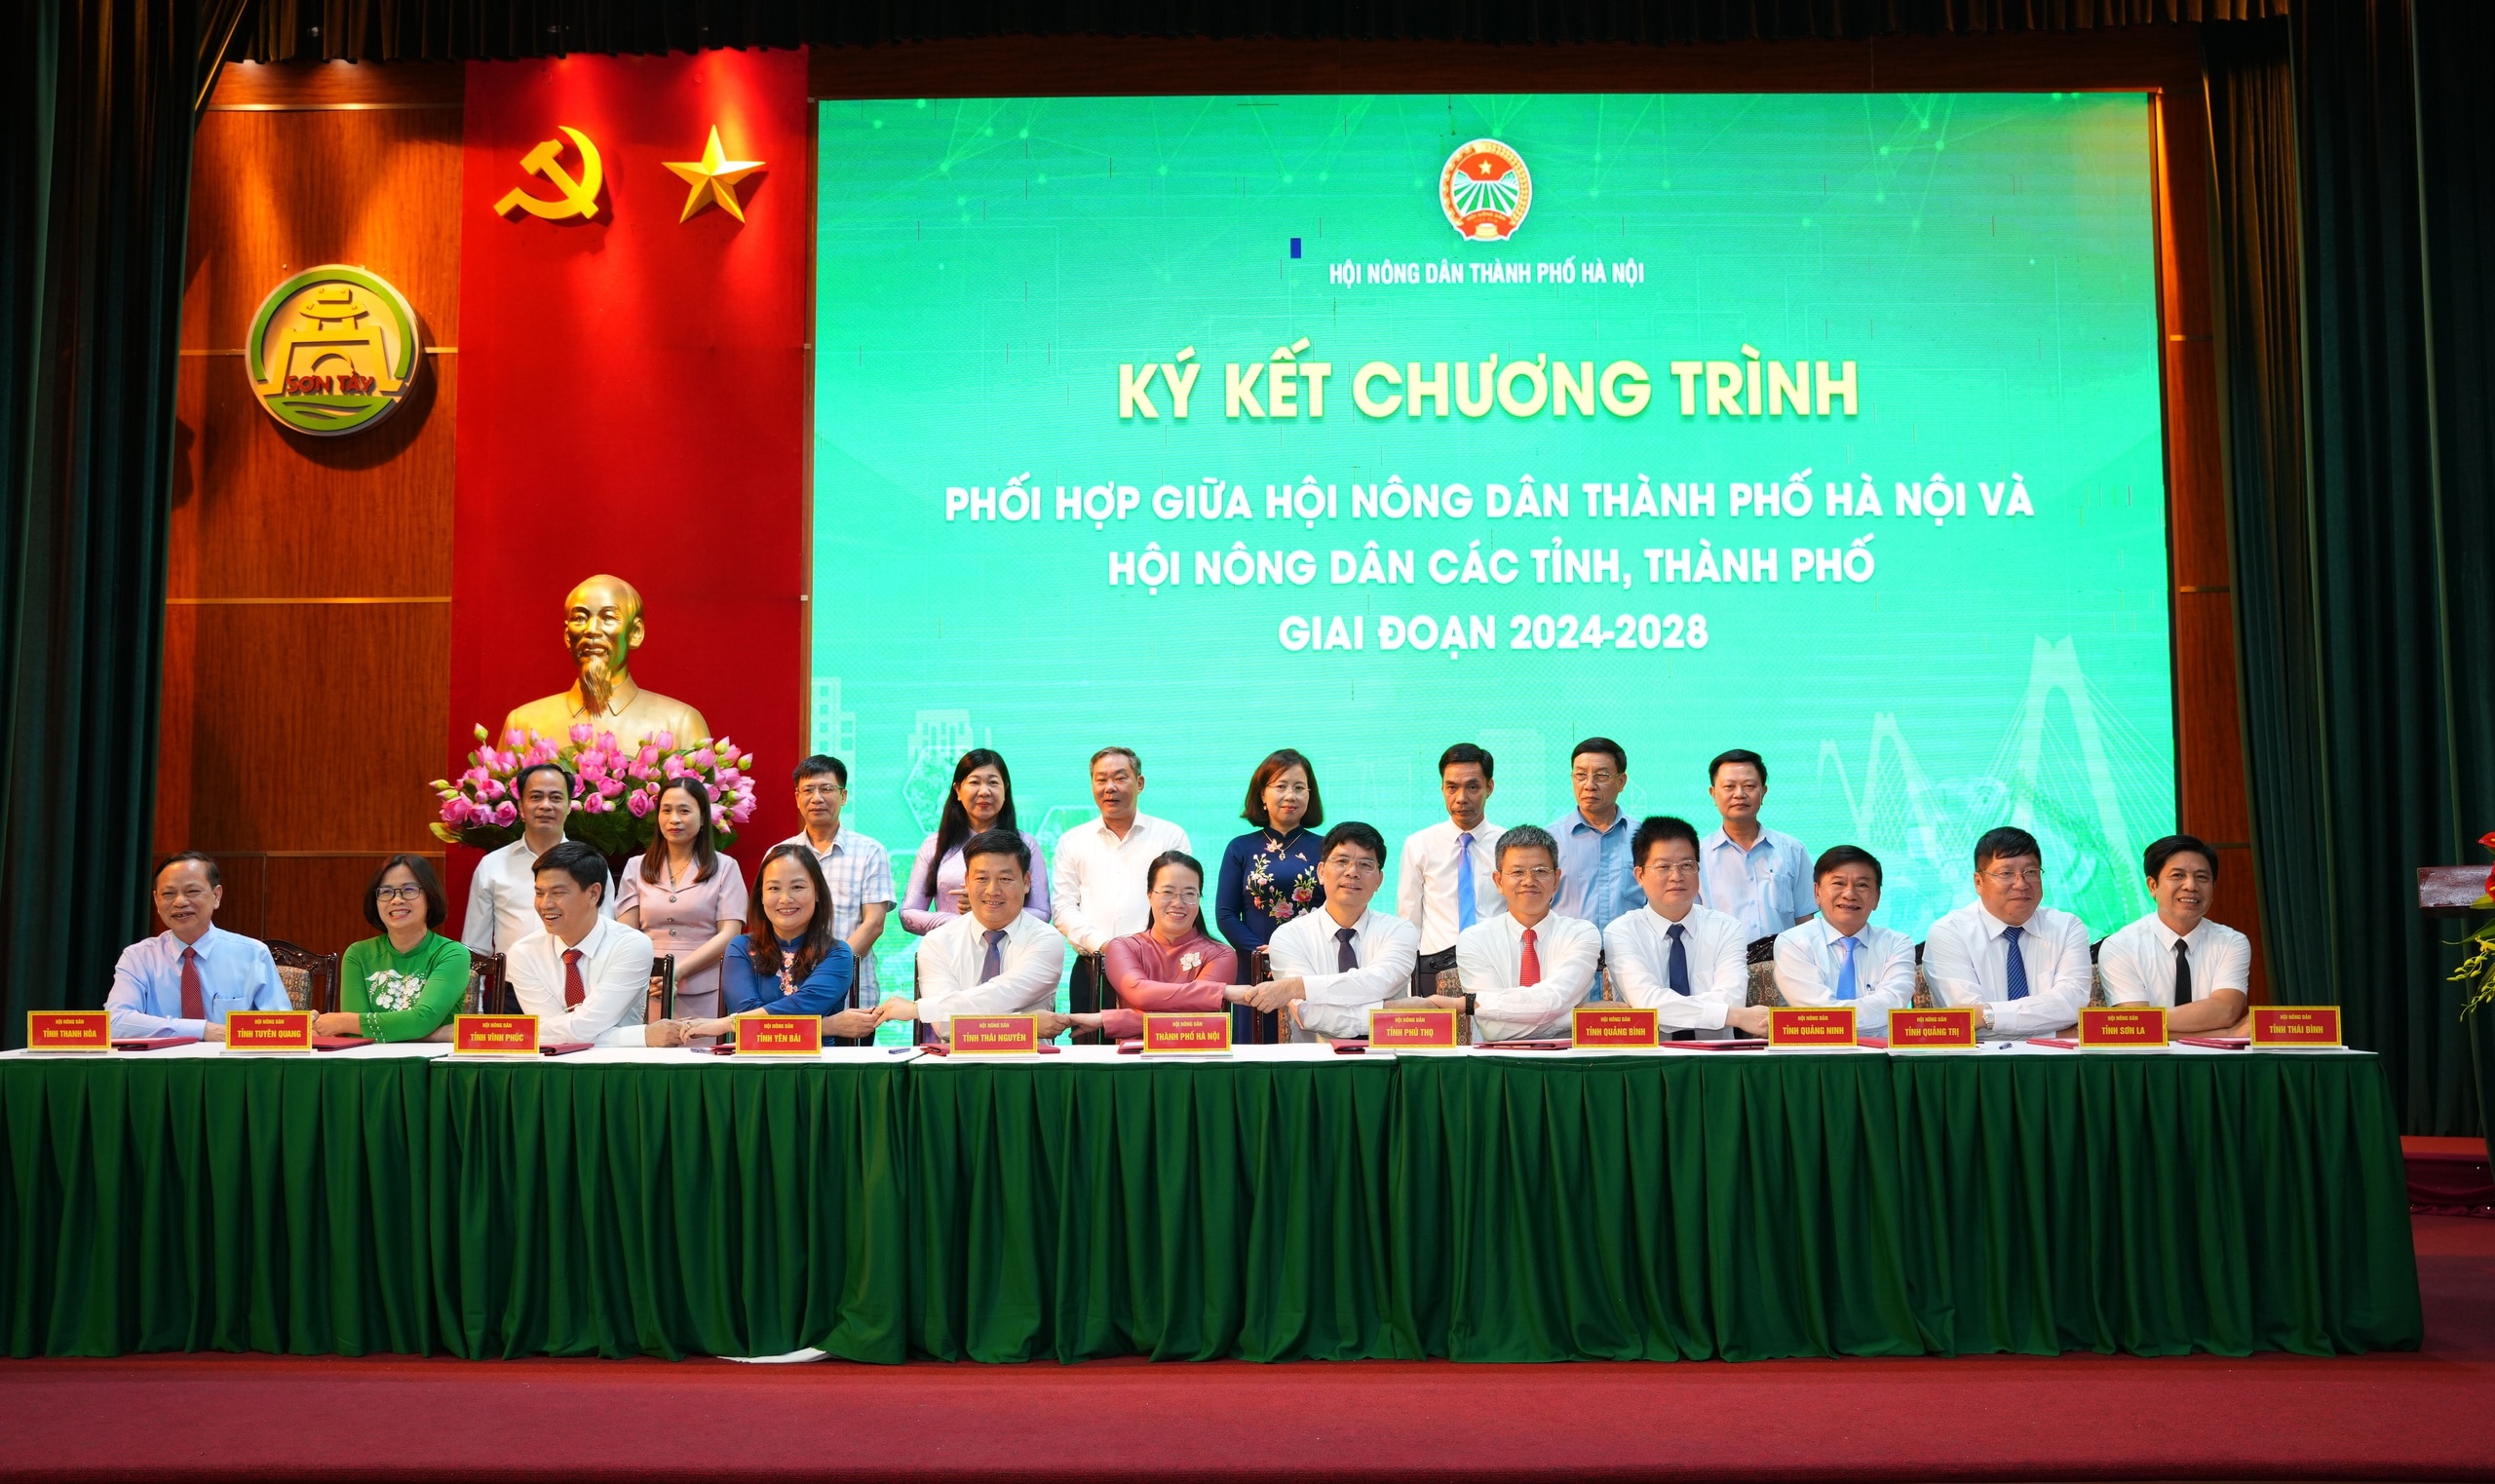 Hội Nông dân TP Hà Nội và Hội Nông dân 36 tỉnh, thành ký kết chương trình phối hợp giai đoạn 2024-2028- Ảnh 1.